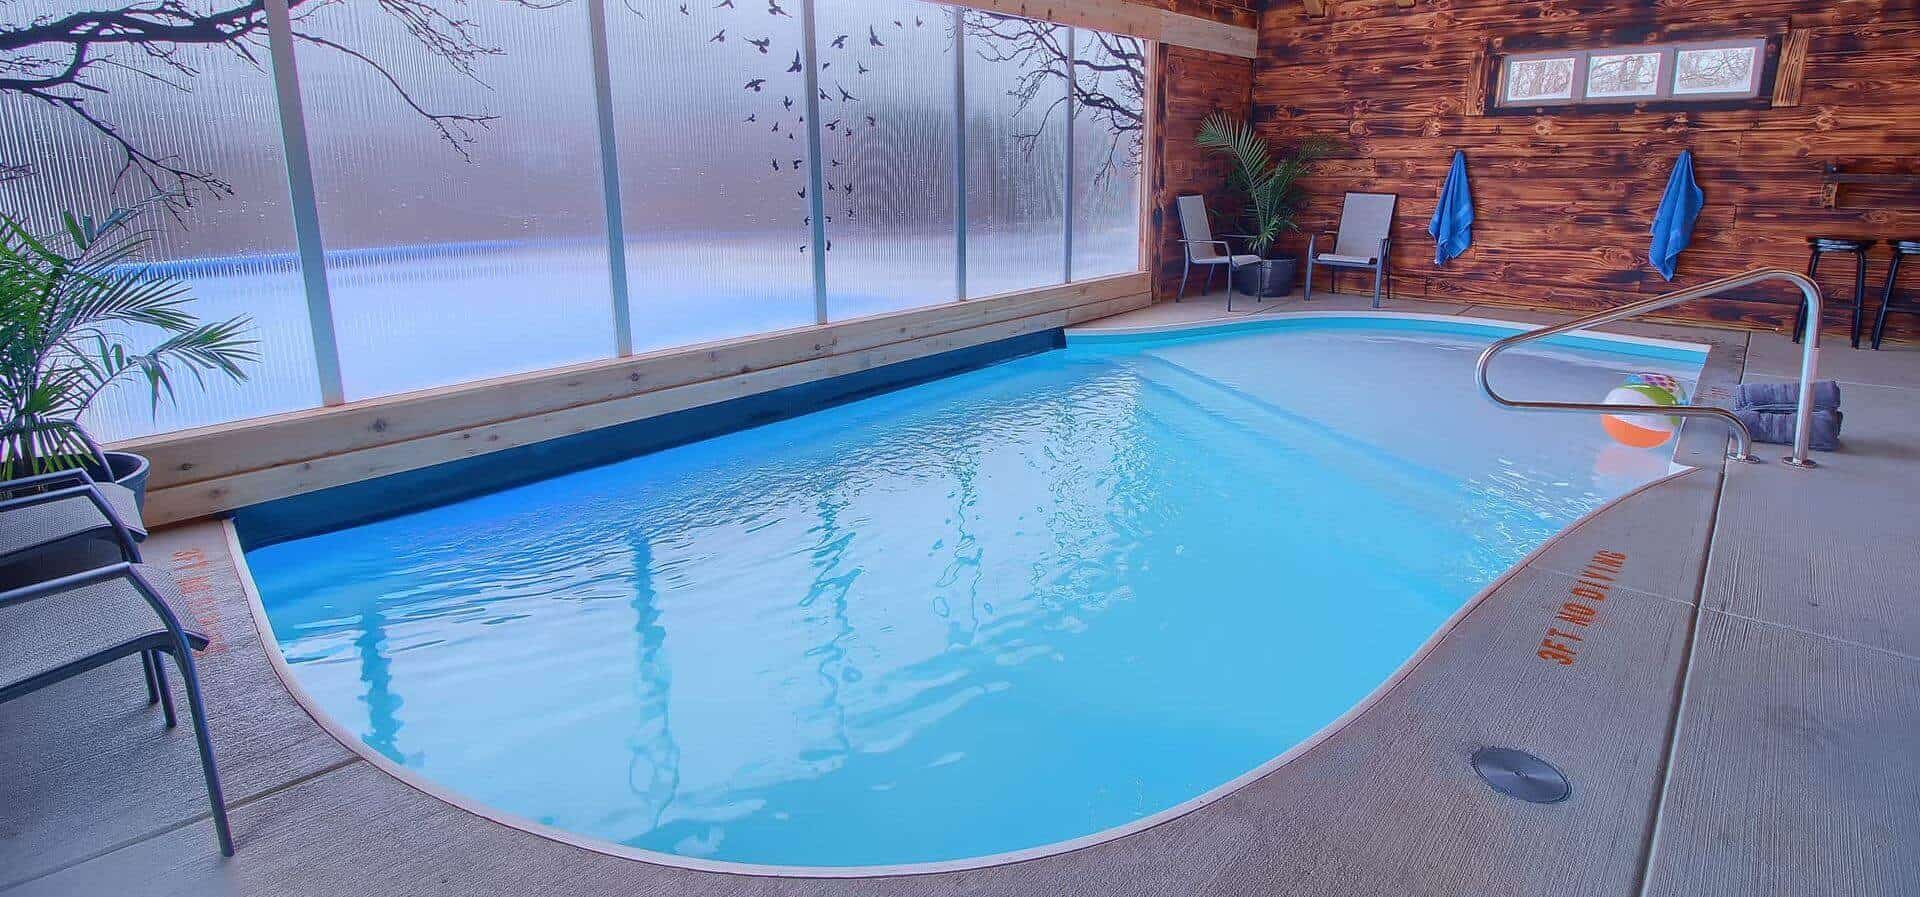 Indoor outdoor pool